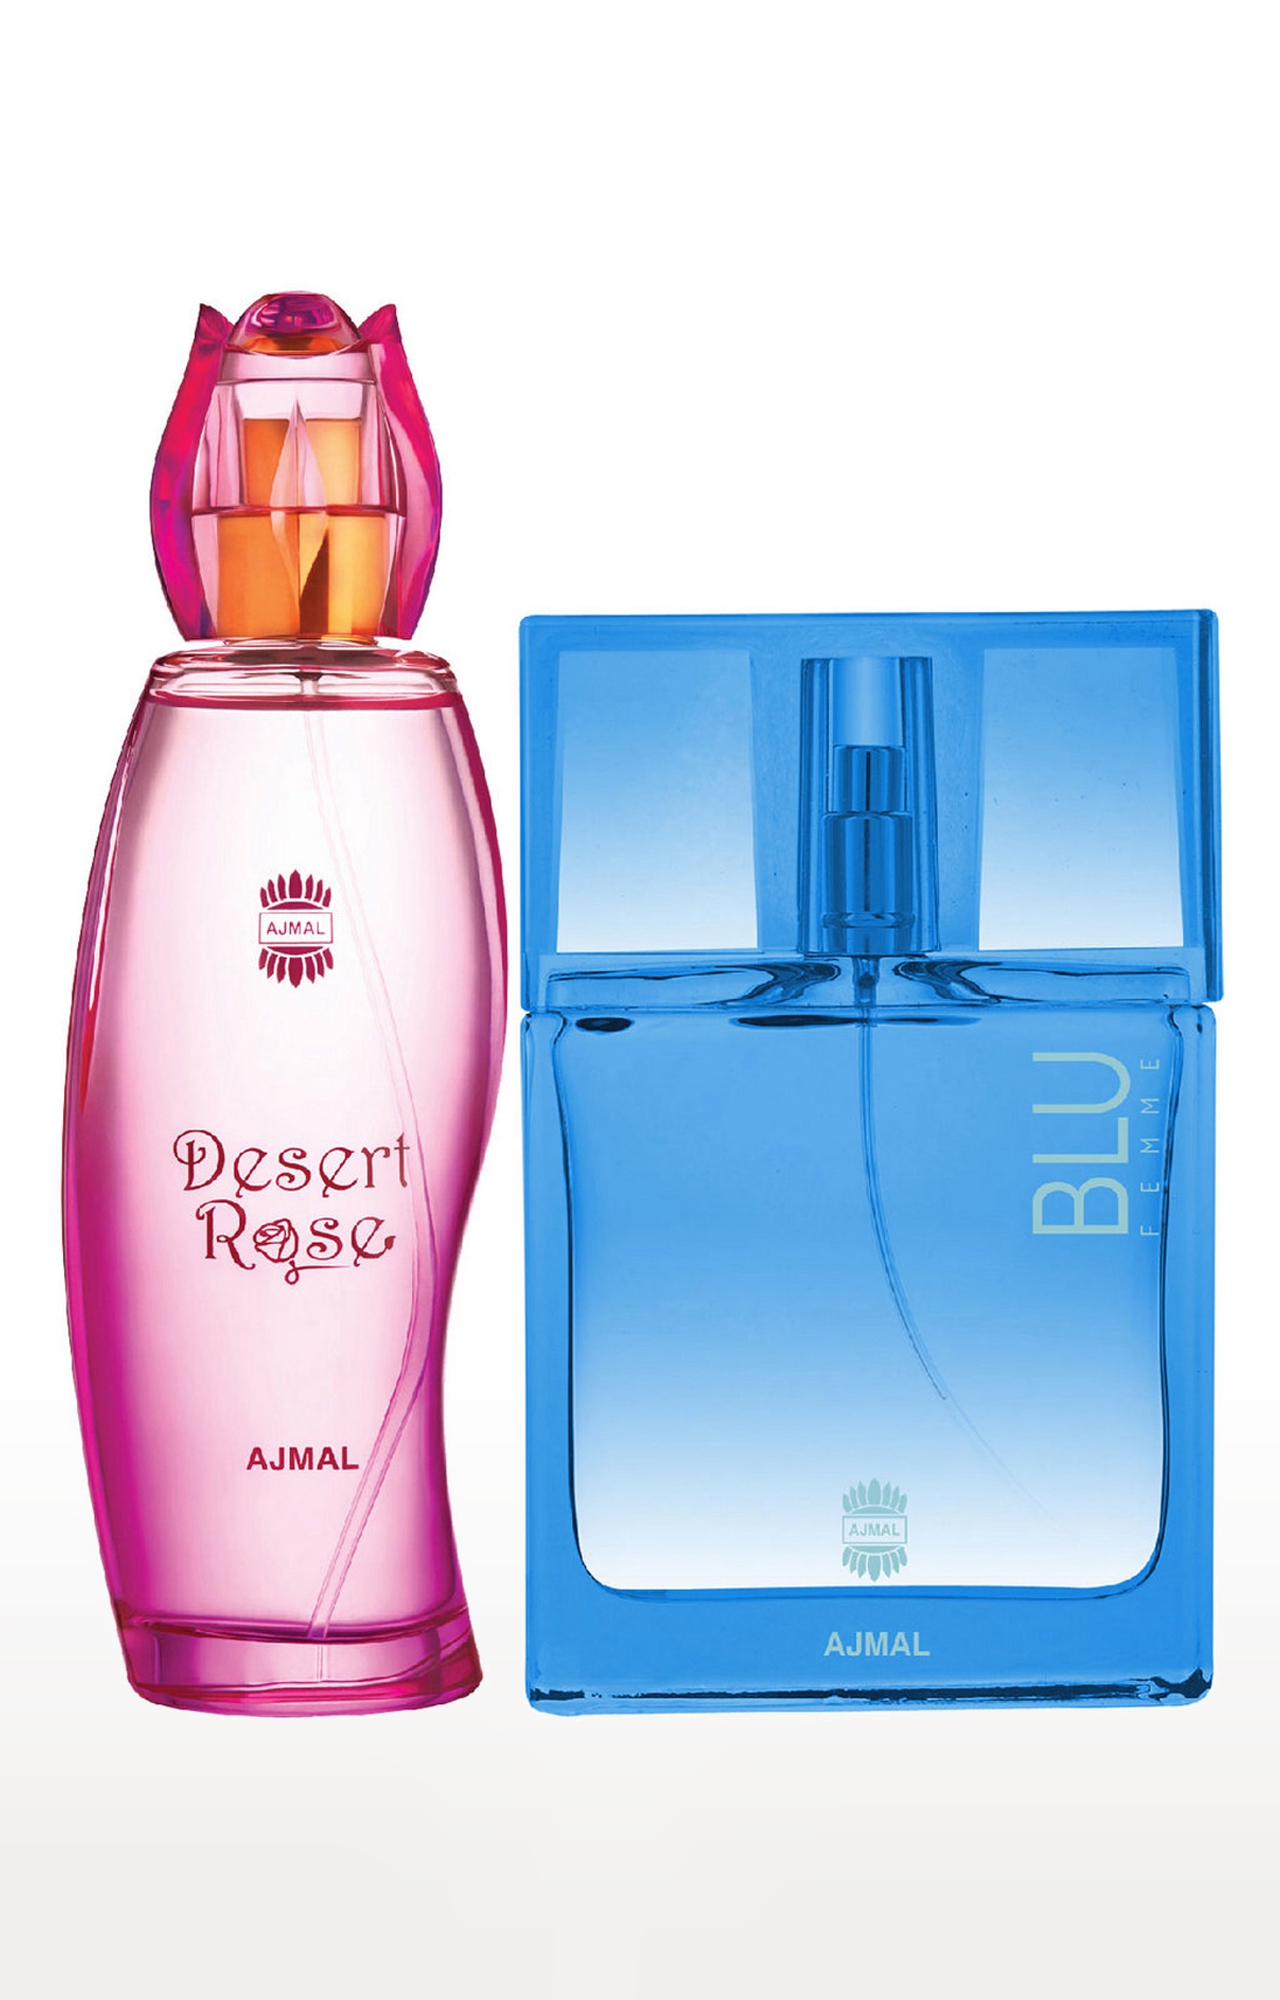 Ajmal Desert Rose EDP Oriental Perfume 100ml for Women and Blu Femme EDP Perfume 50ml for Women